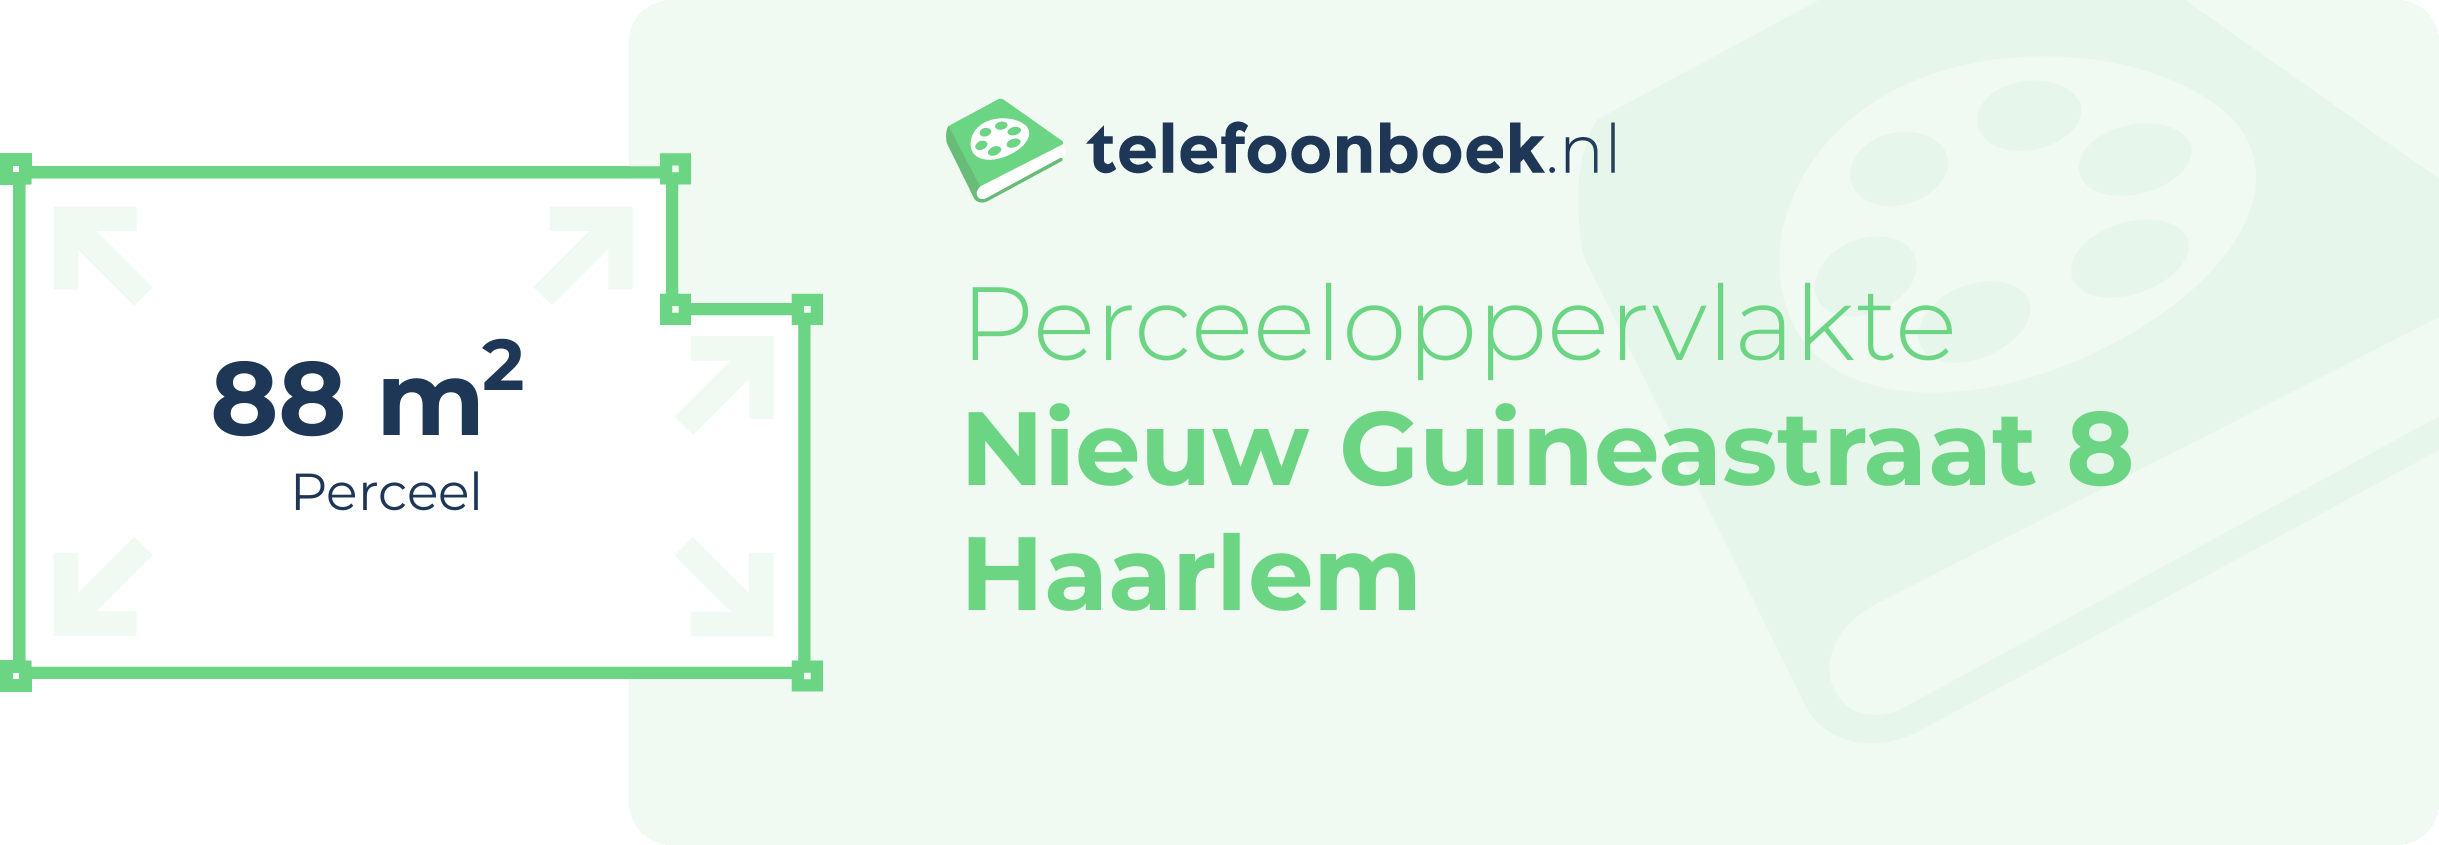 Perceeloppervlakte Nieuw Guineastraat 8 Haarlem